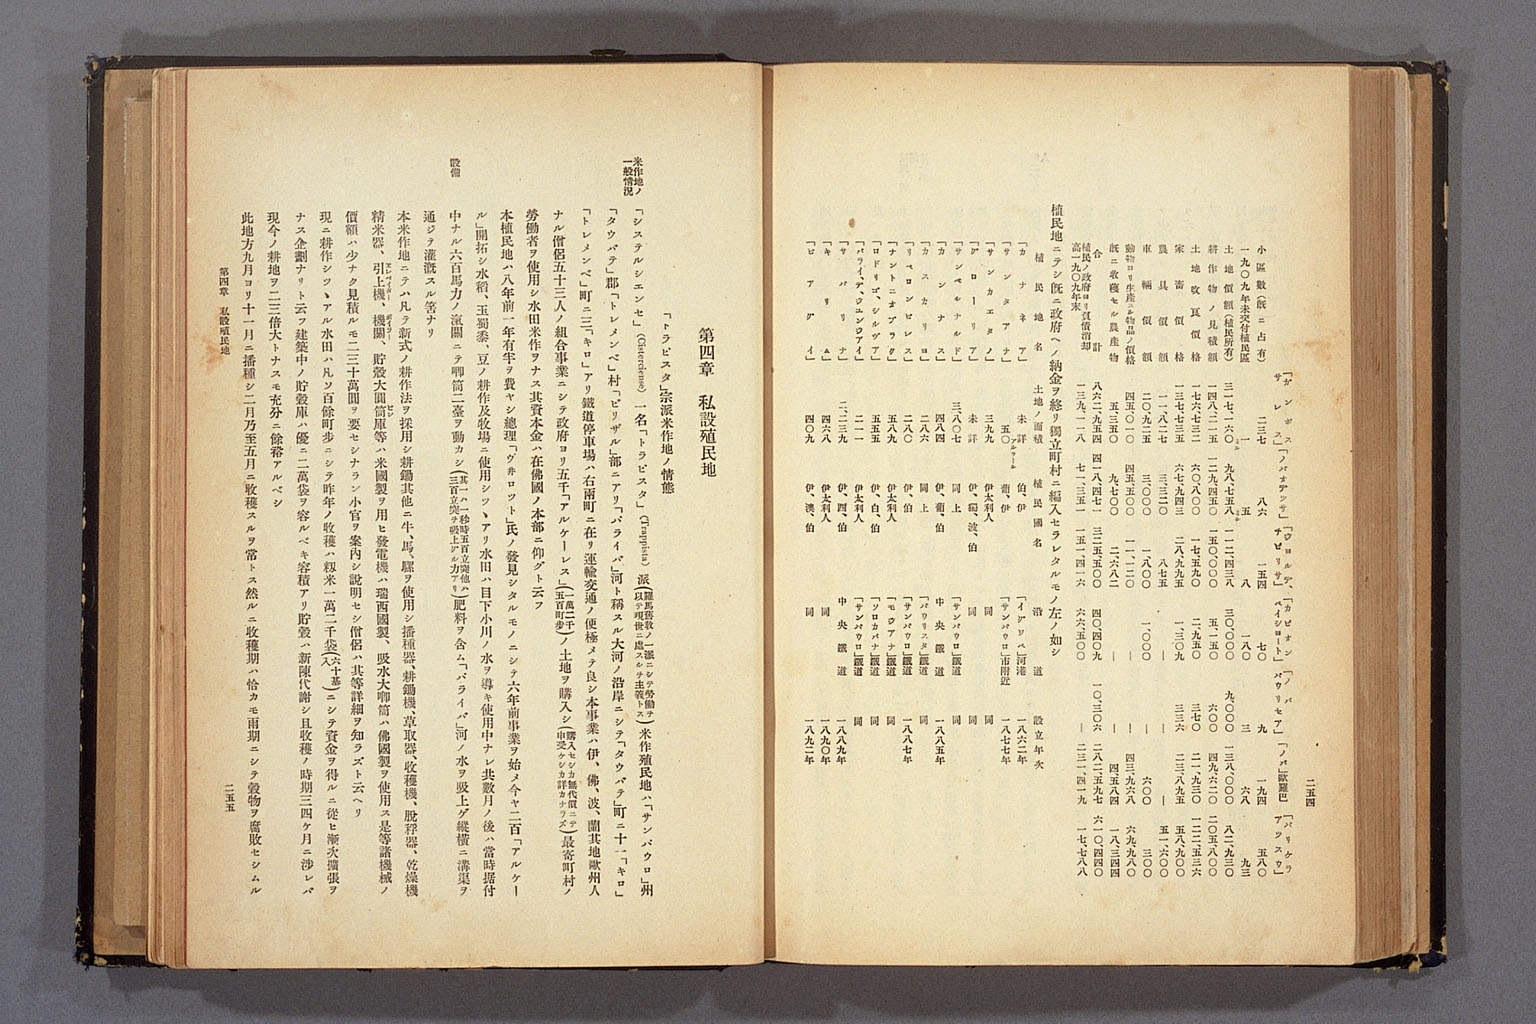 Imagem «Relatório de uma inspeção feita em abril de 1911 no estado de São Paulo»